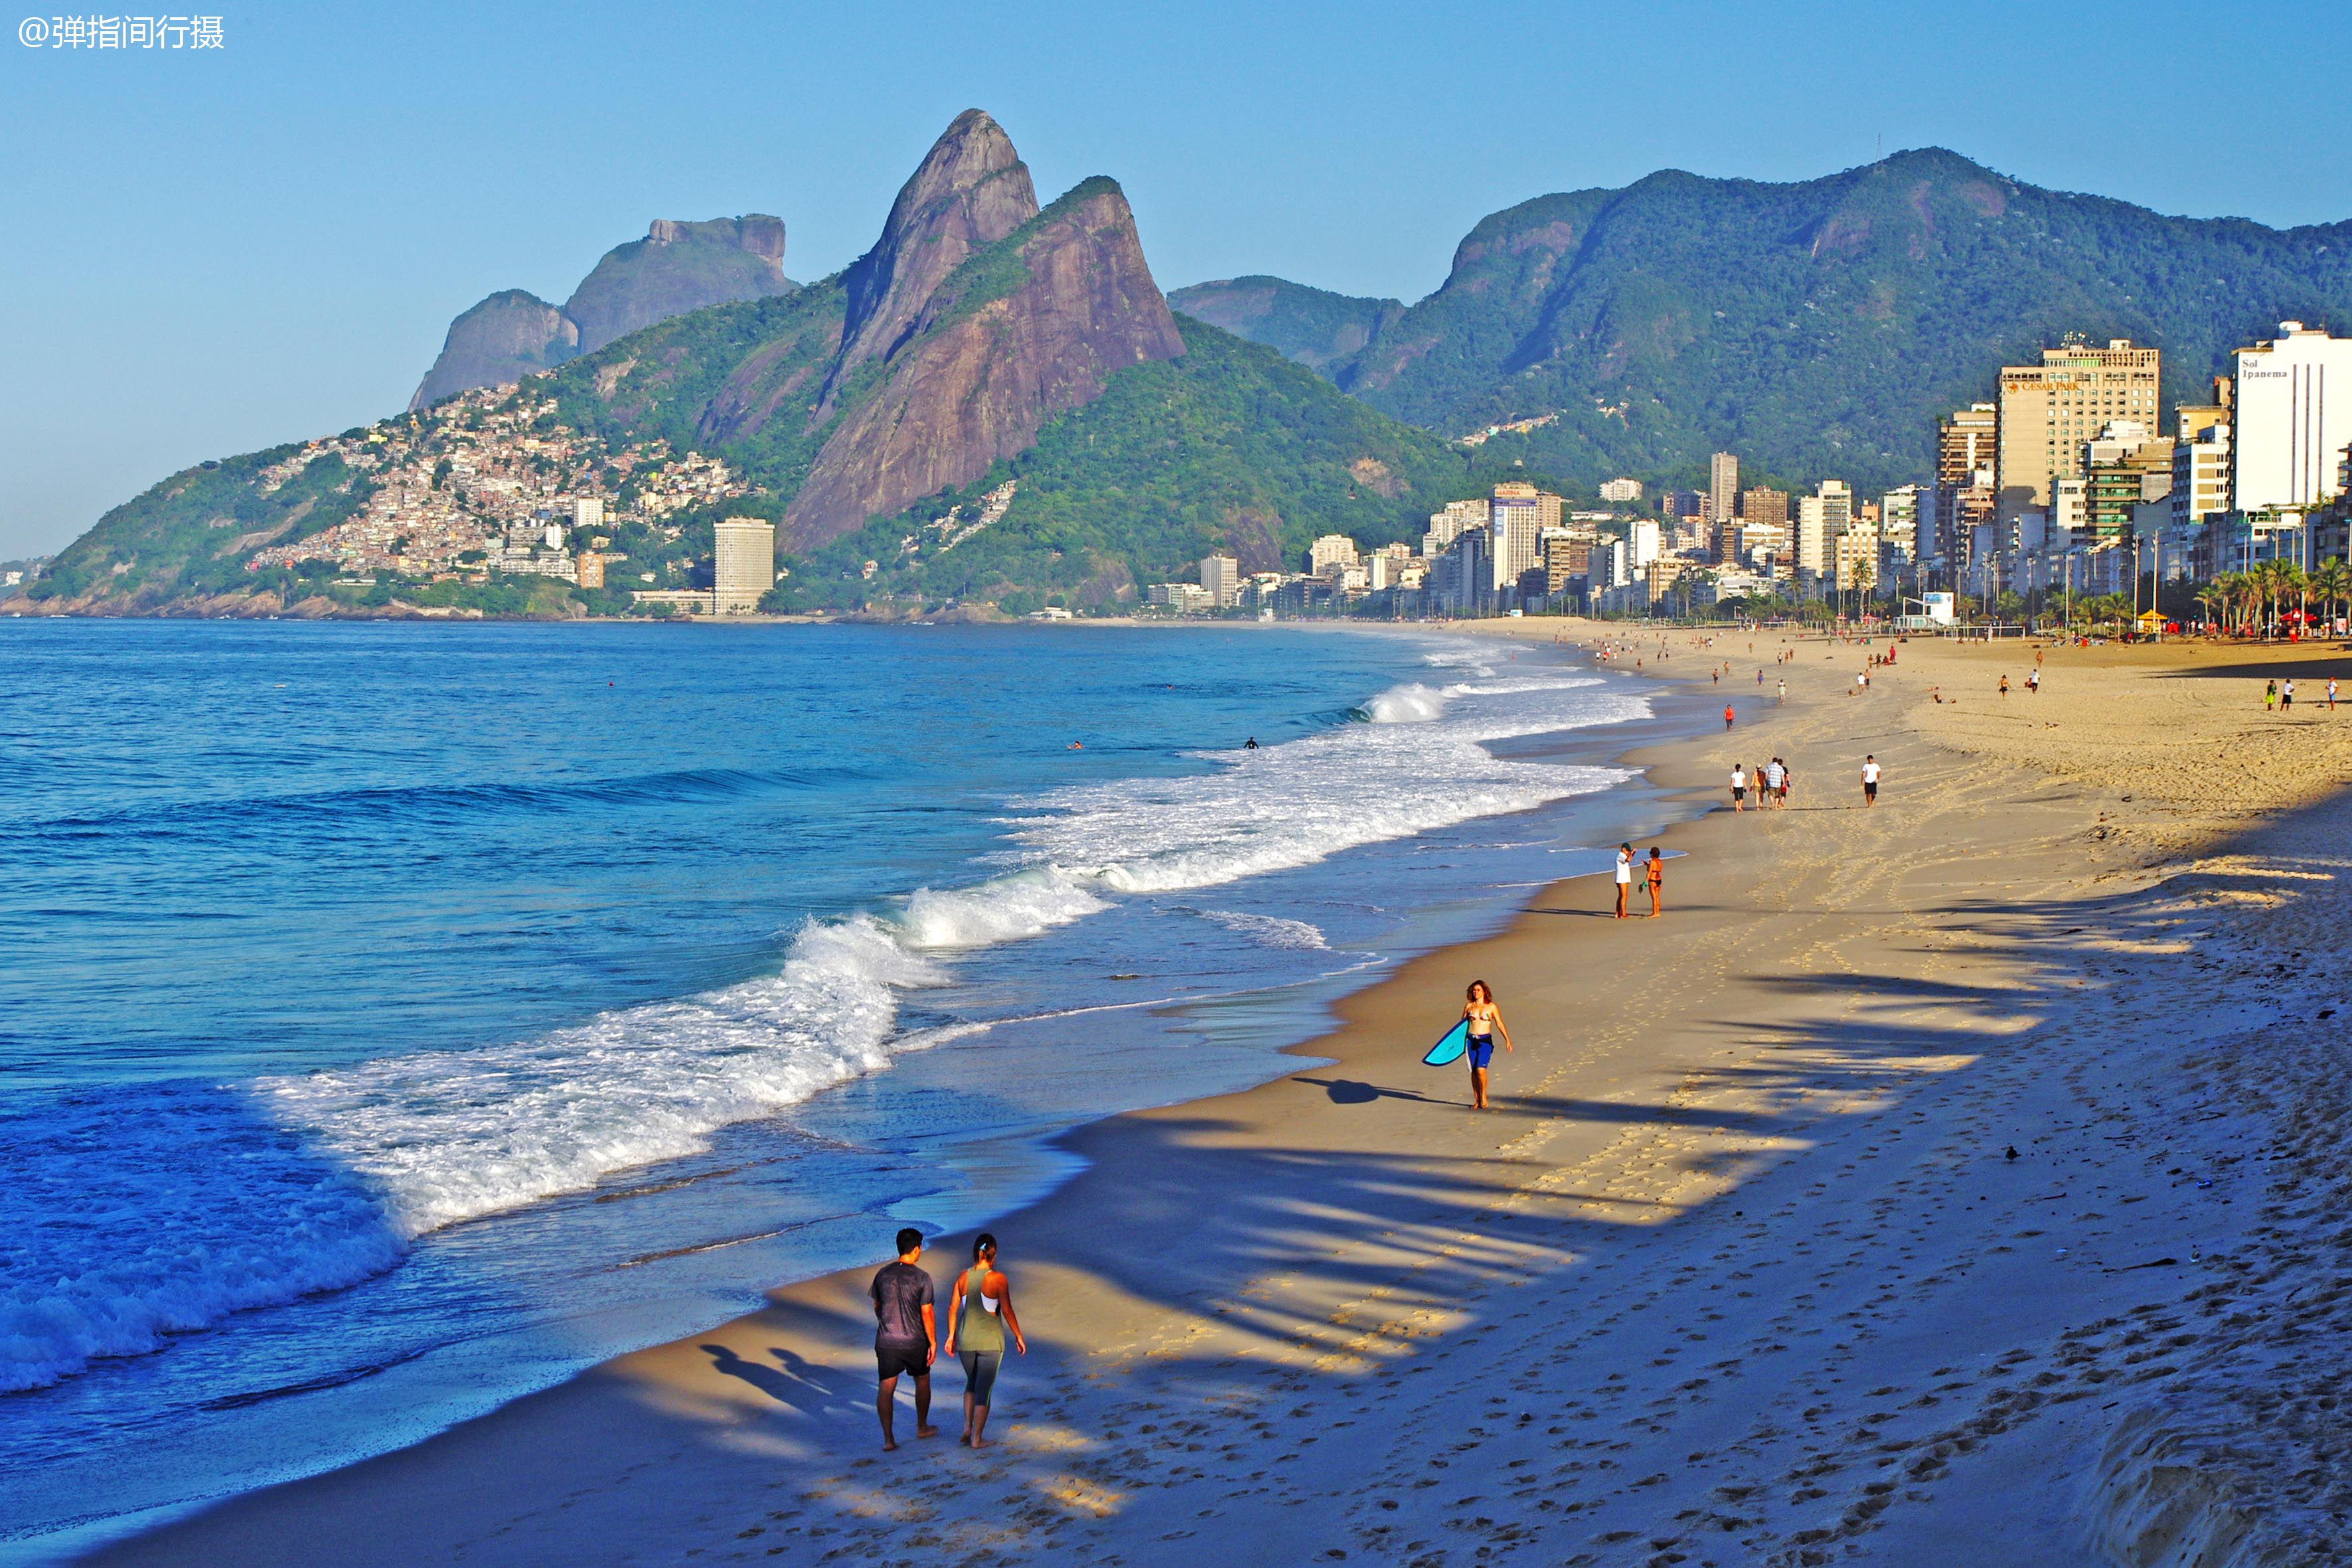 巴西"上帝之城,由山海岛屿组成的"仙境,风光美得无法形容